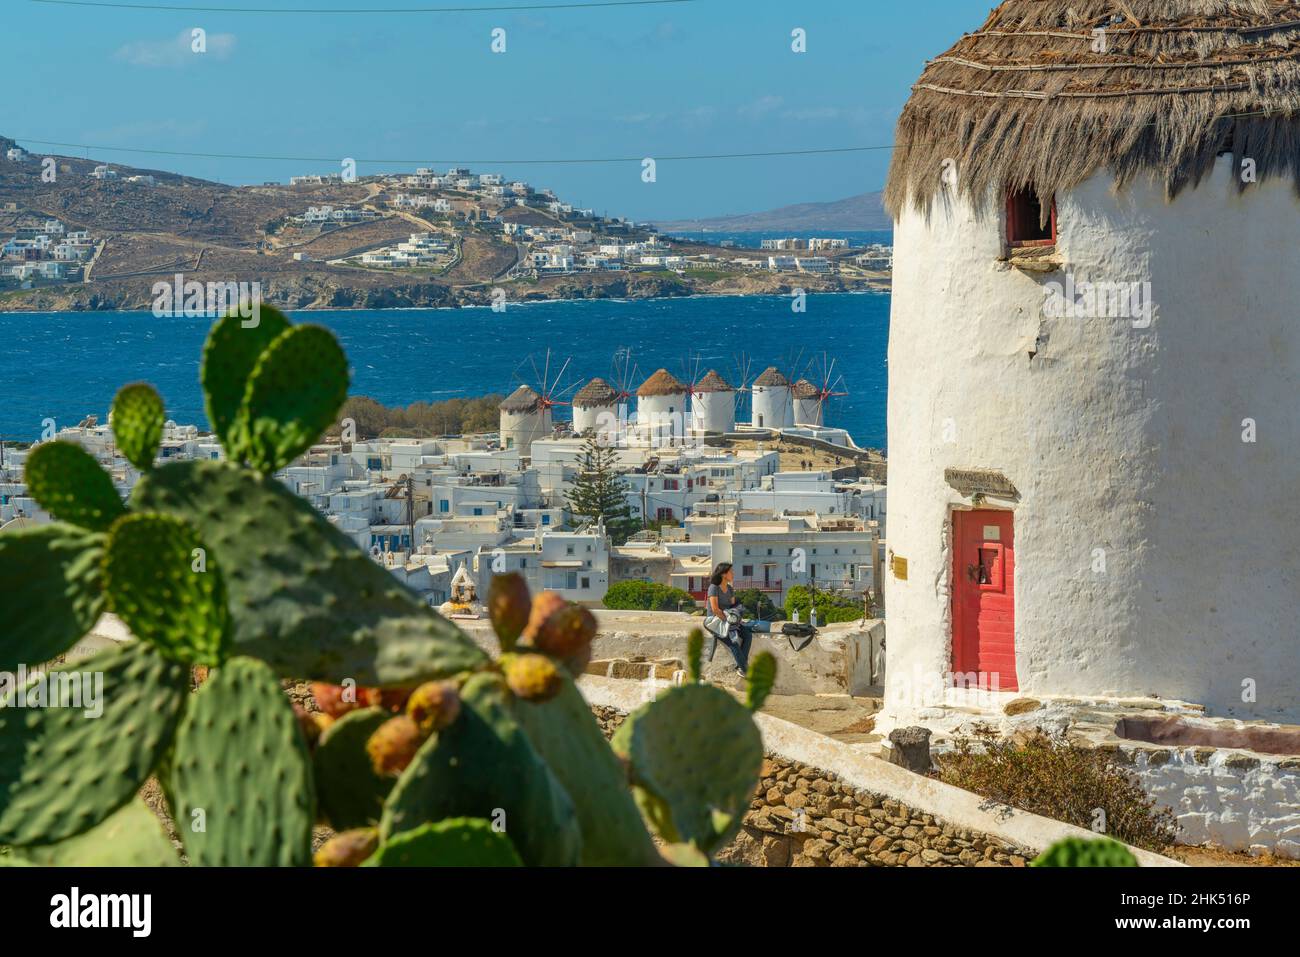 Erhöhter Blick auf Windmühlen und Stadt, Mykonos-Stadt, Mykonos, Kykladen-Inseln, griechische Inseln, Ägäis, Griechenland, Europa Stockfoto